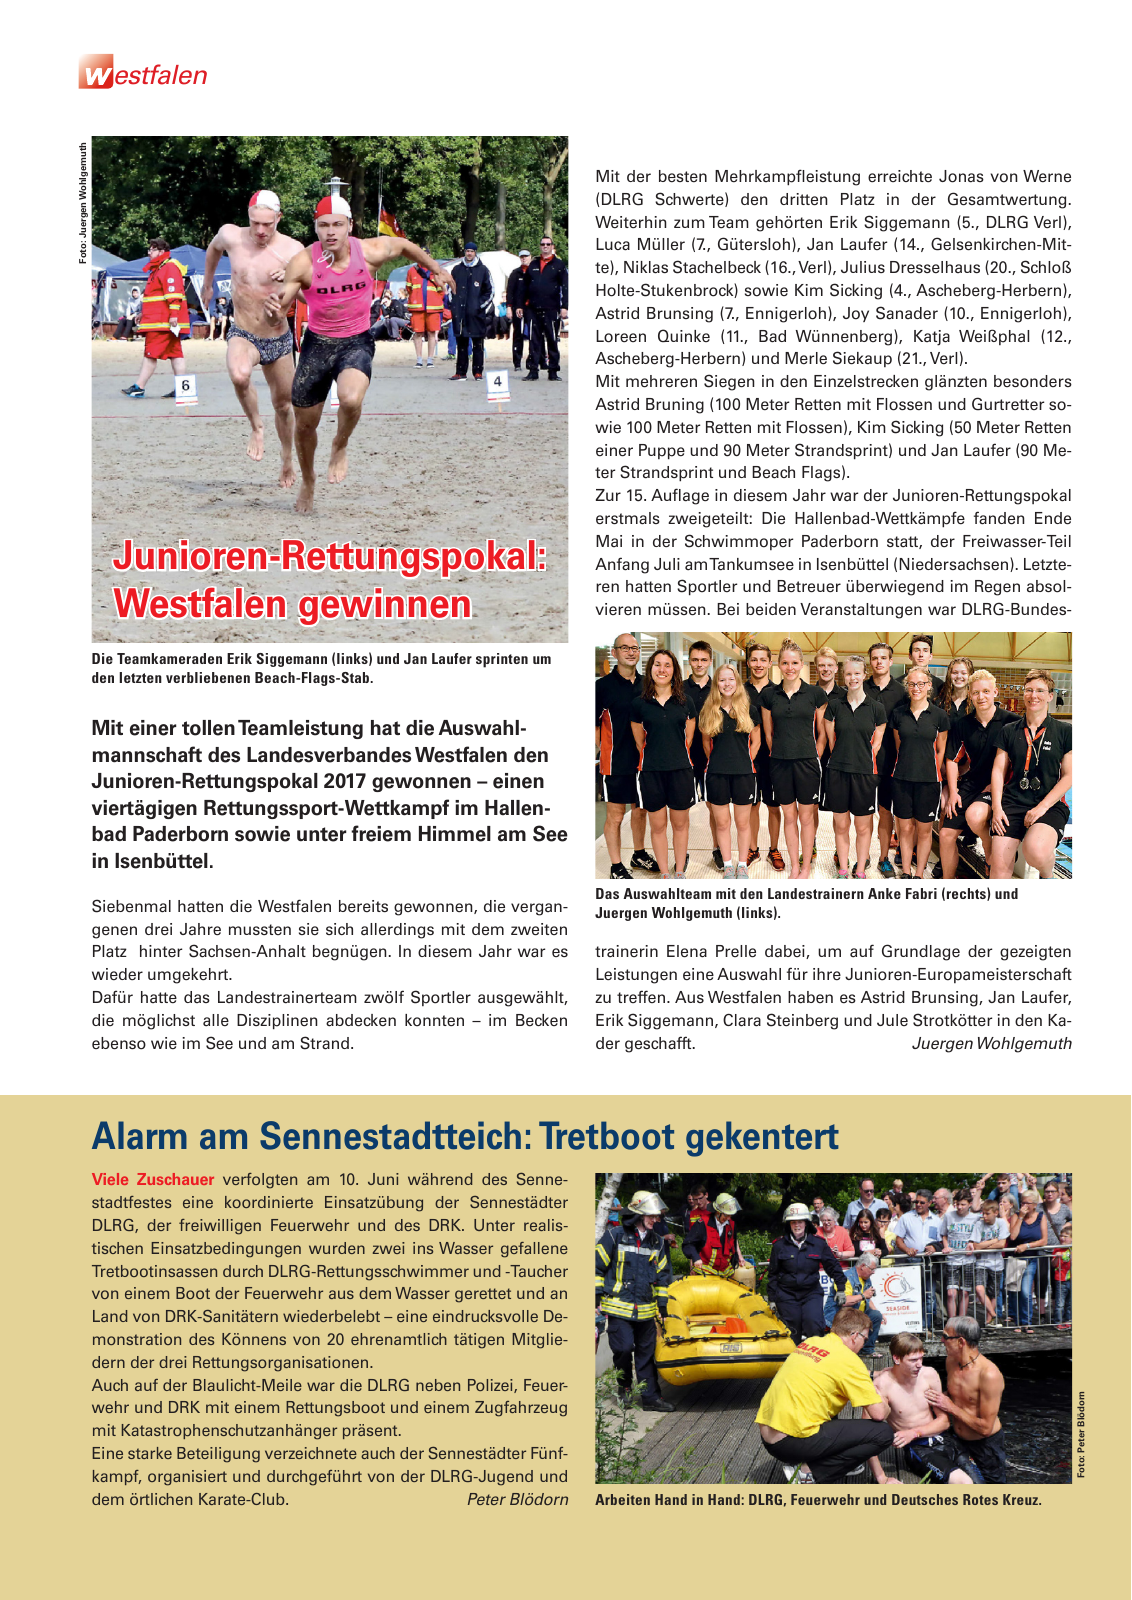 Vorschau Lebensretter 3/2017 - Regionalausgabe Westfalen Seite 6